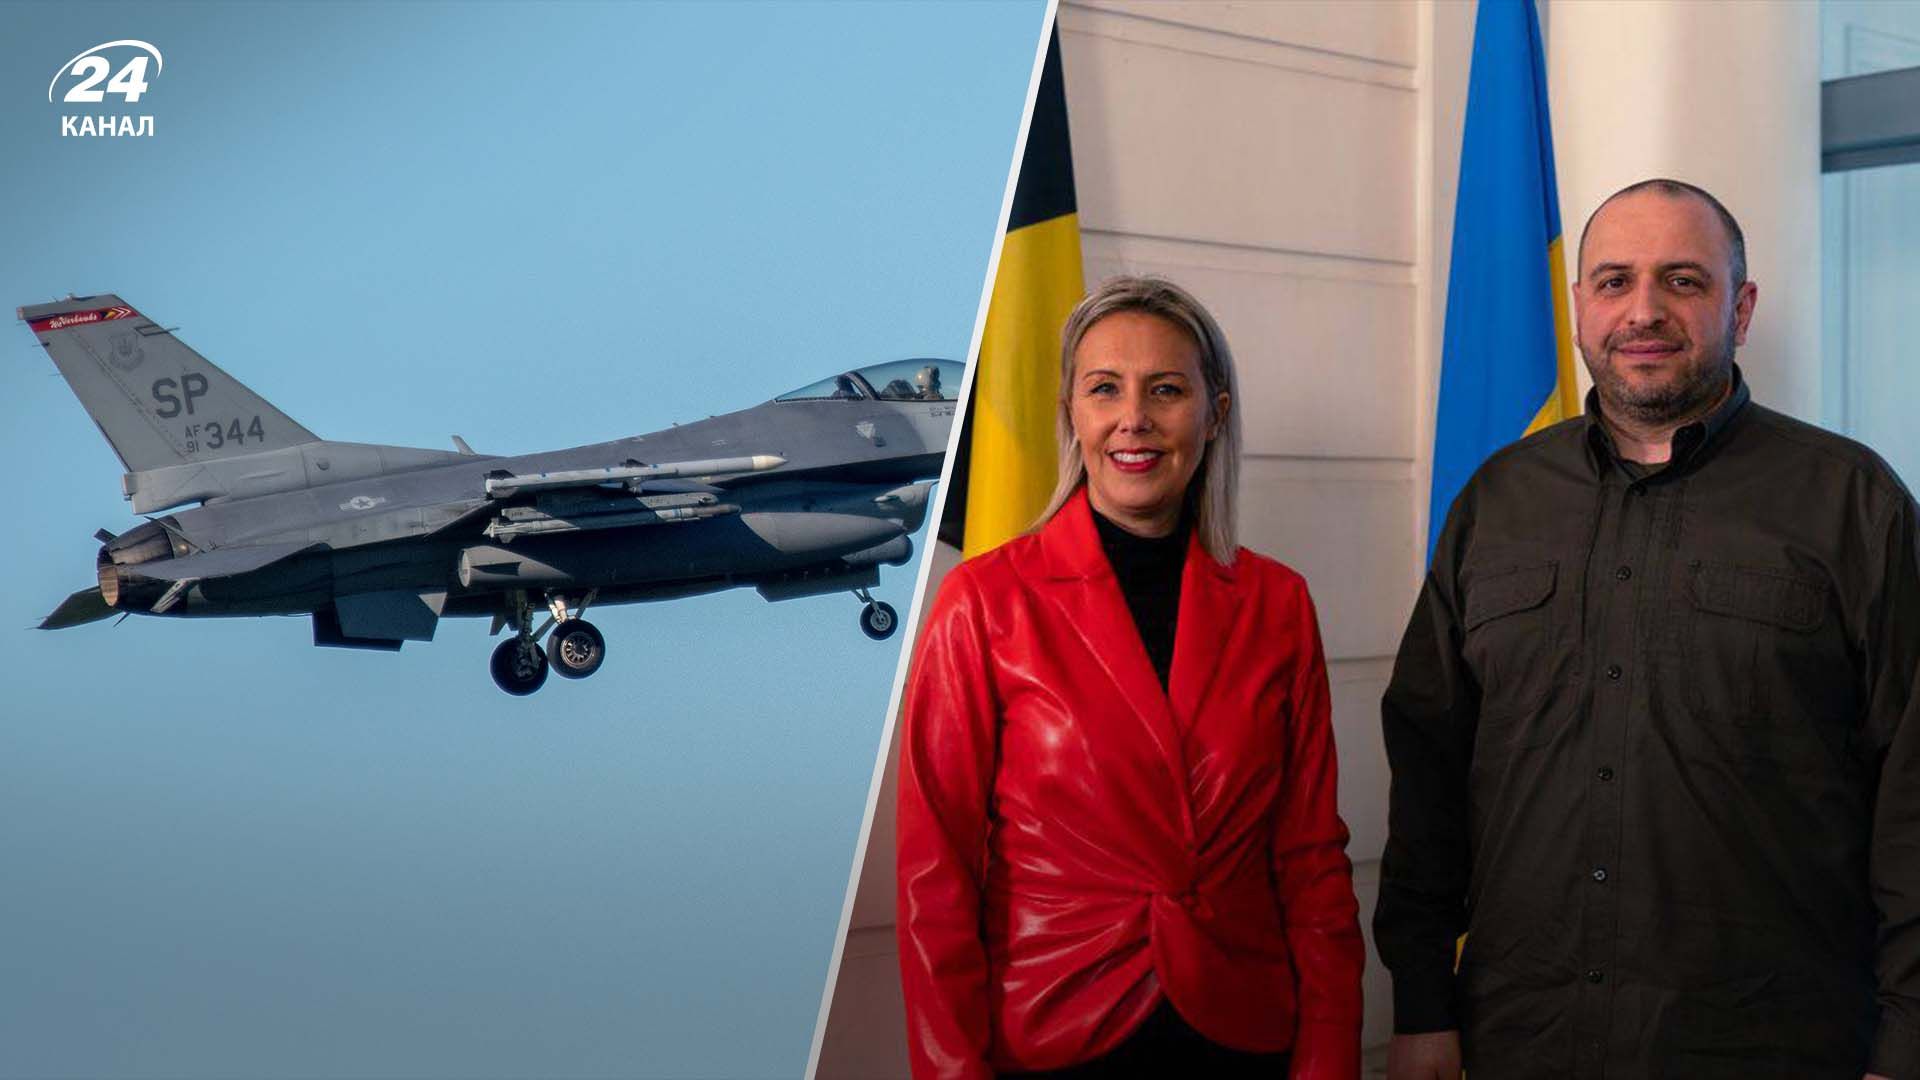 Бельгия передаст F-16 Украине в 2025 году